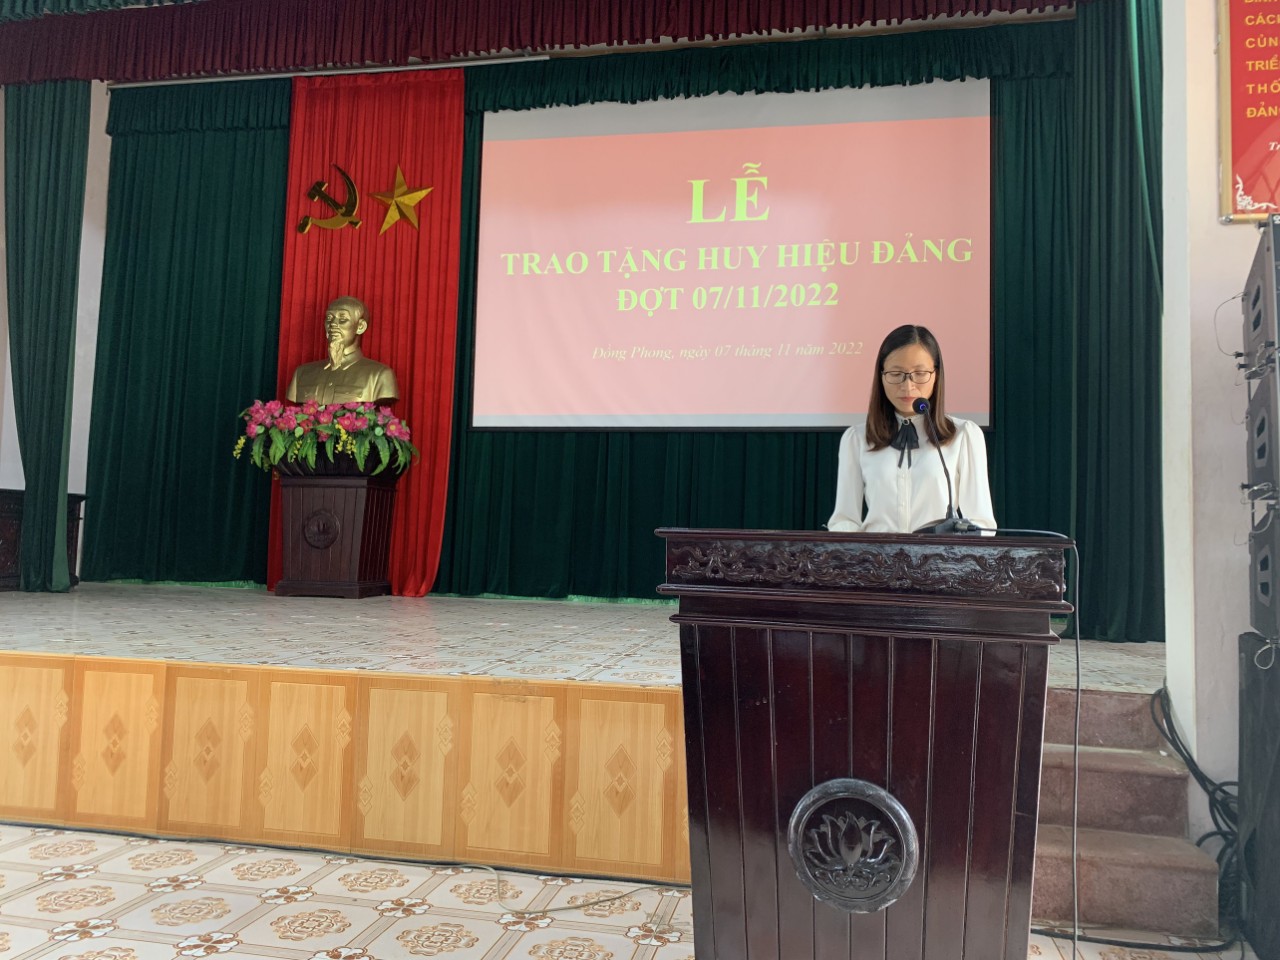 Đảng bộ xã Đồng Phong tổ chức Lễ trao tặng huy hiệu đảng cho các đồng chí đảng viên đợt 07/11/2022 và tổ chức hội nghị, nghiên cứu và quán triệt các văn bản của Bộ Chính trị